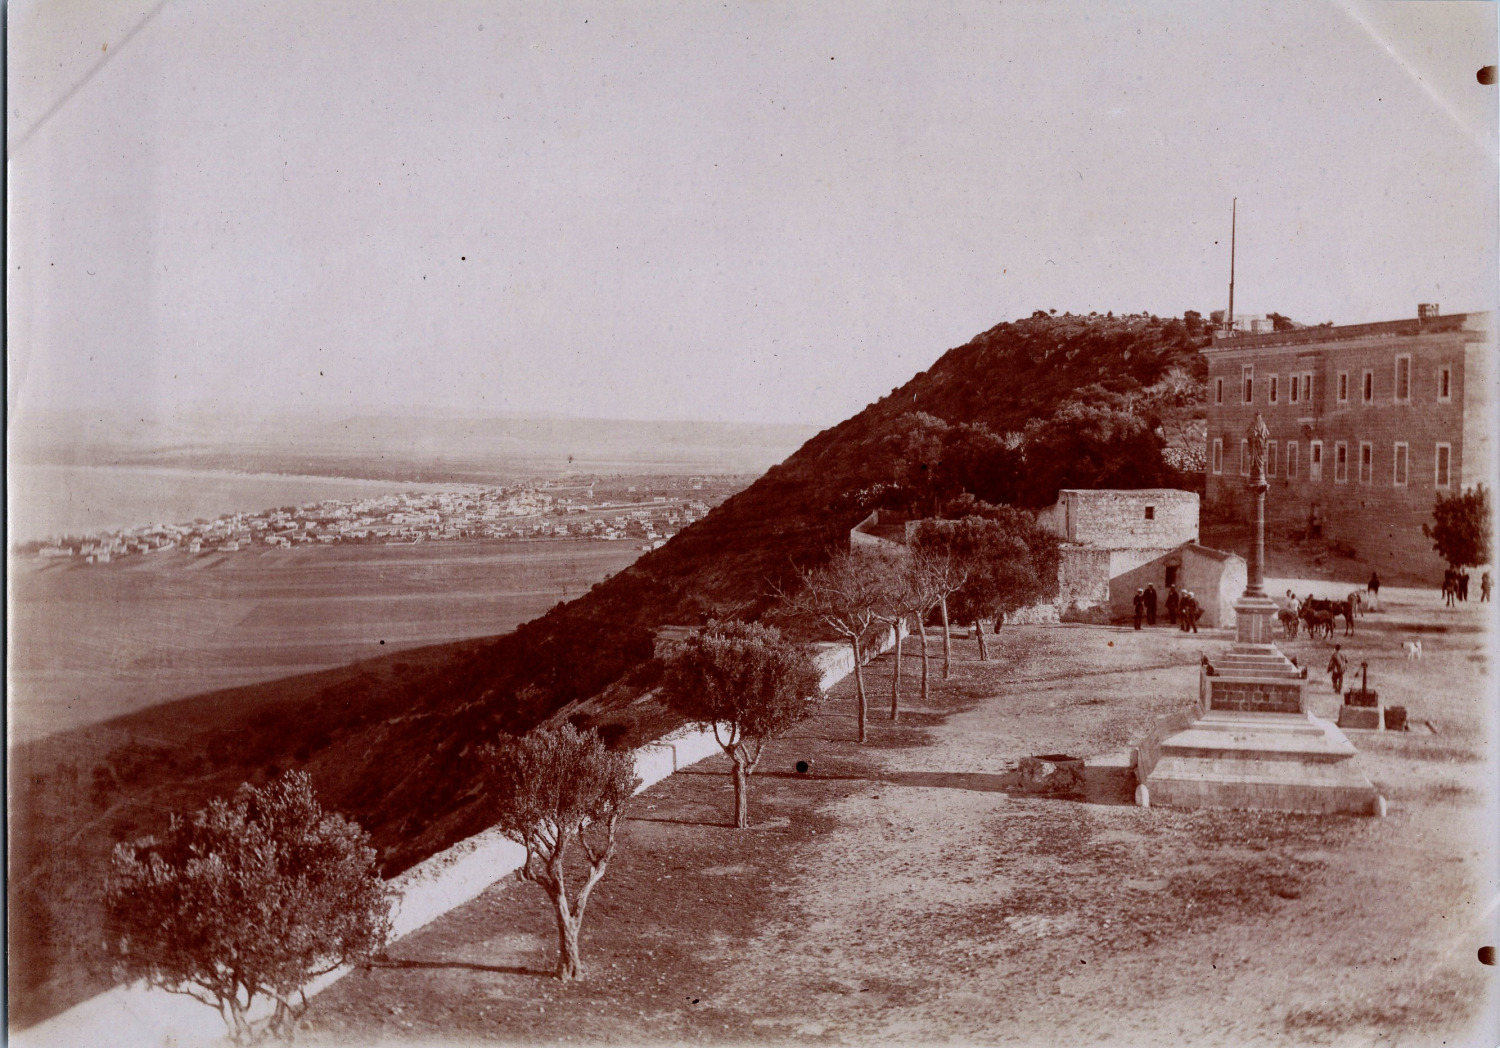 Caïffa (Haifa), Mount Carmel, Vintage Print, ca.1890 Vintage Print 